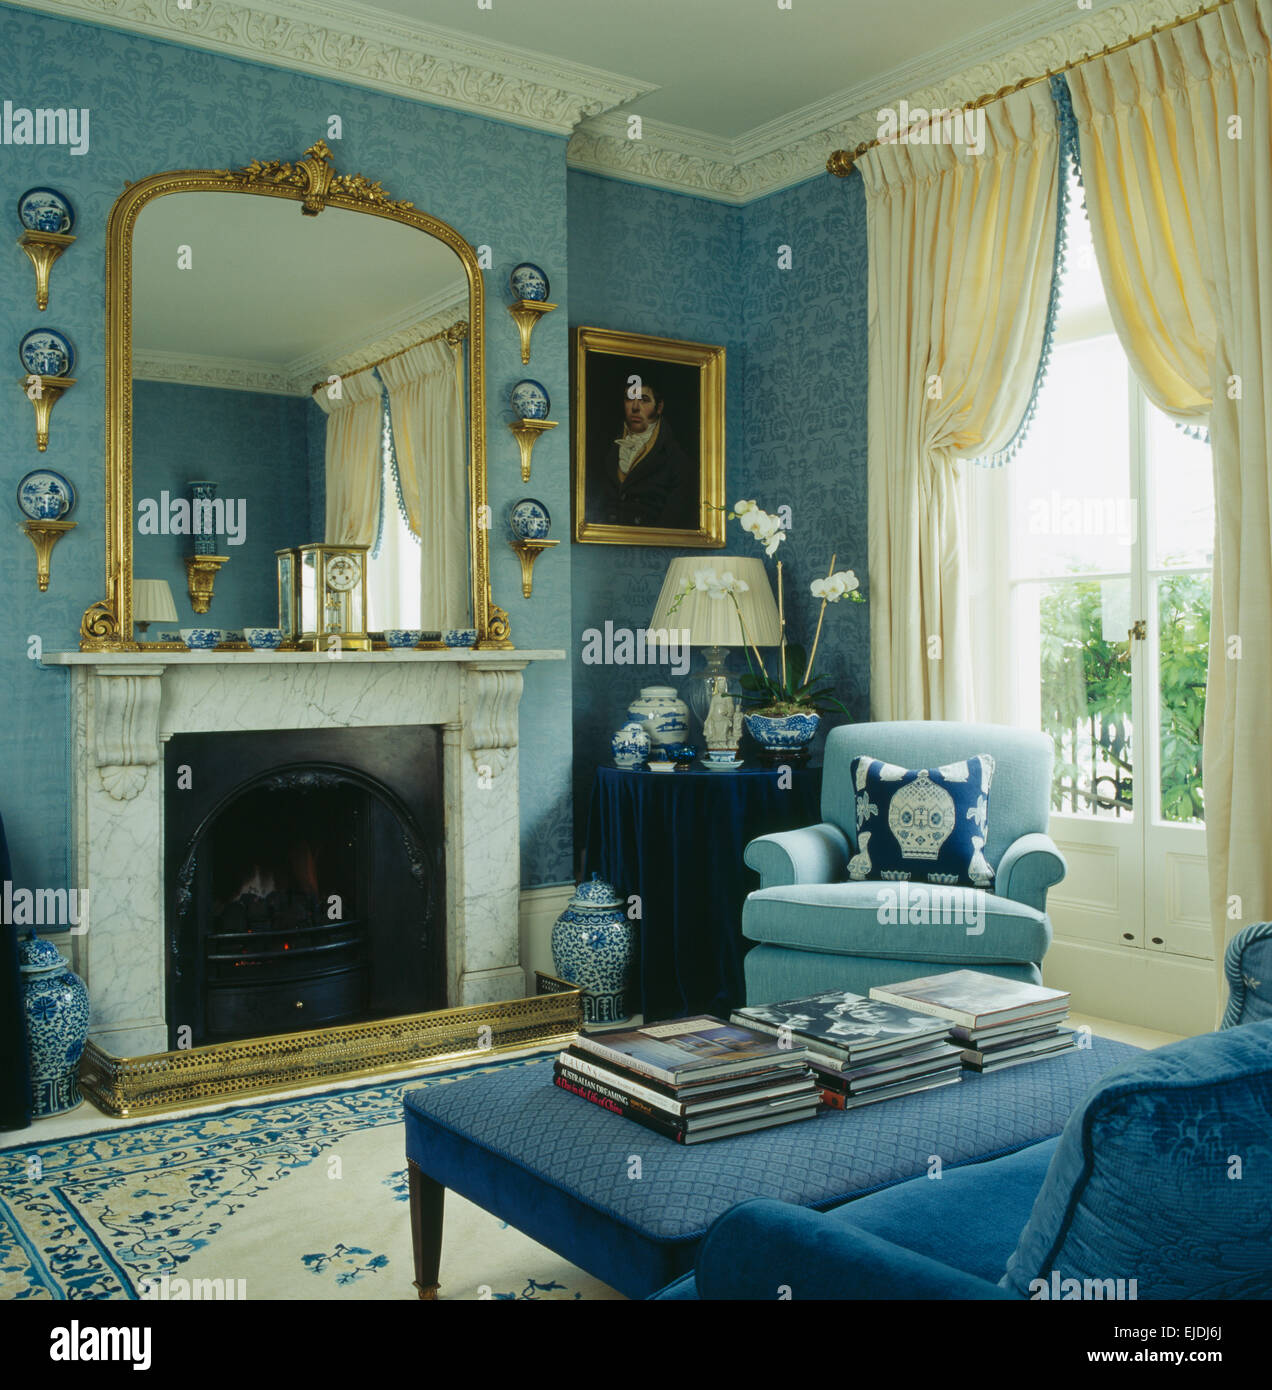 Grand Miroir doré au-dessus de la cheminée de marbre au salon bleu avec des rideaux crème sur la fenêtre Banque D'Images